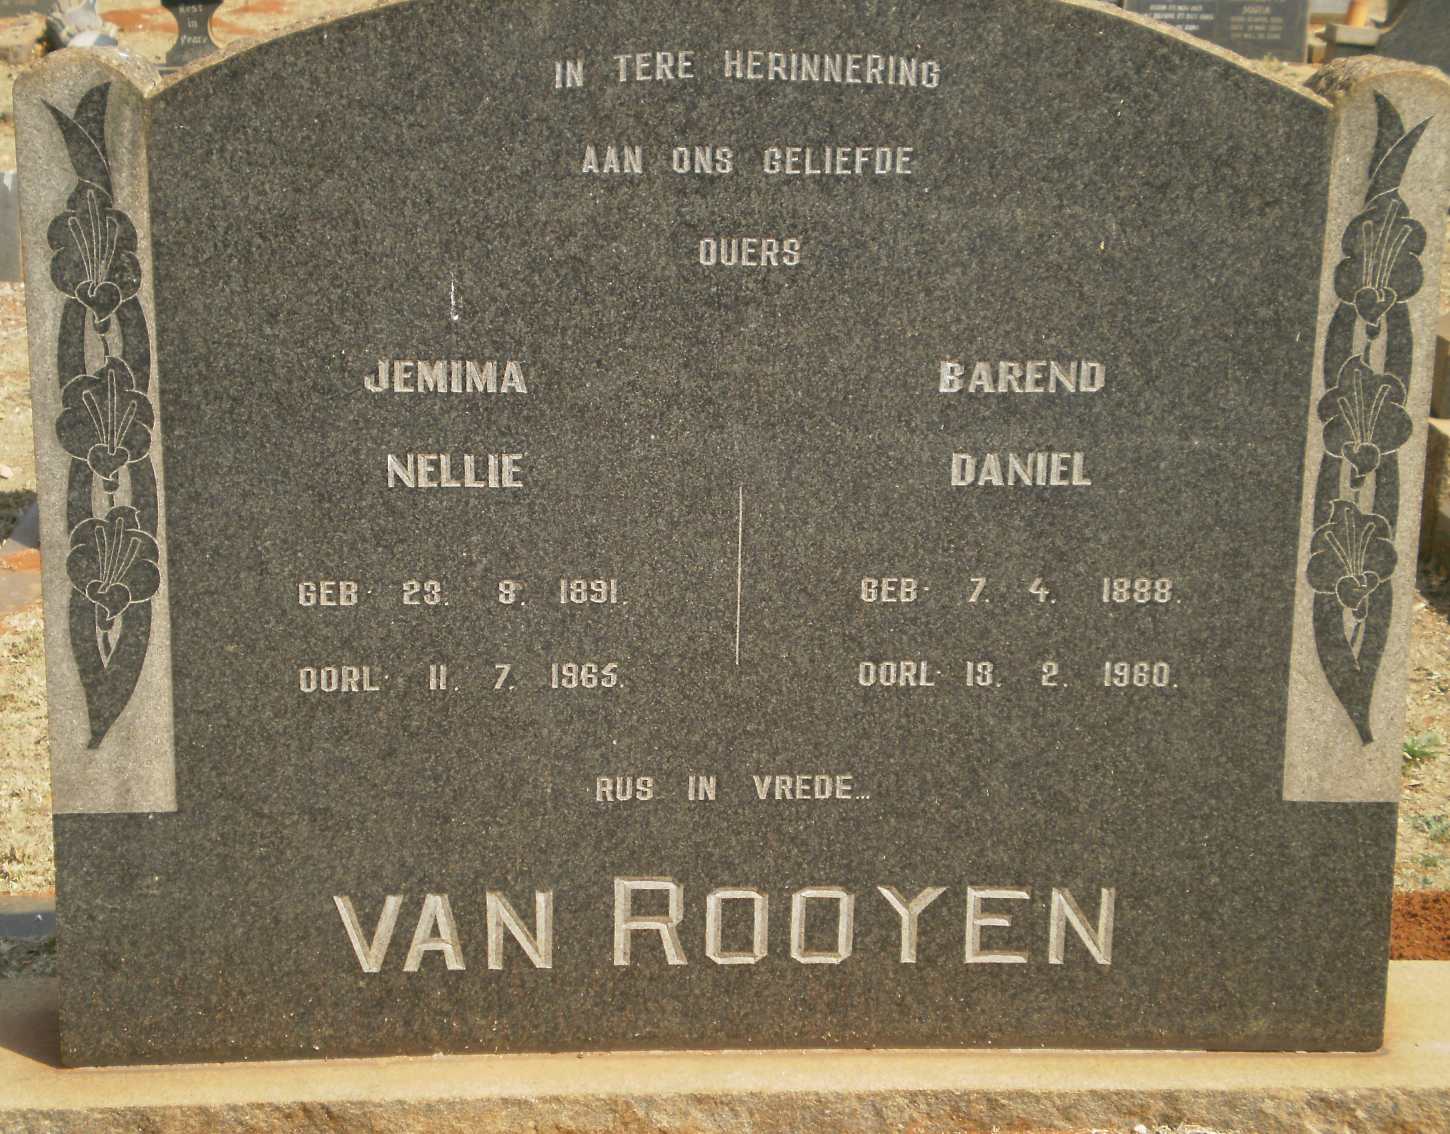 ROOYEN Barend Daniel, van 1888-1960 & Jemima Nellie 1891-1965